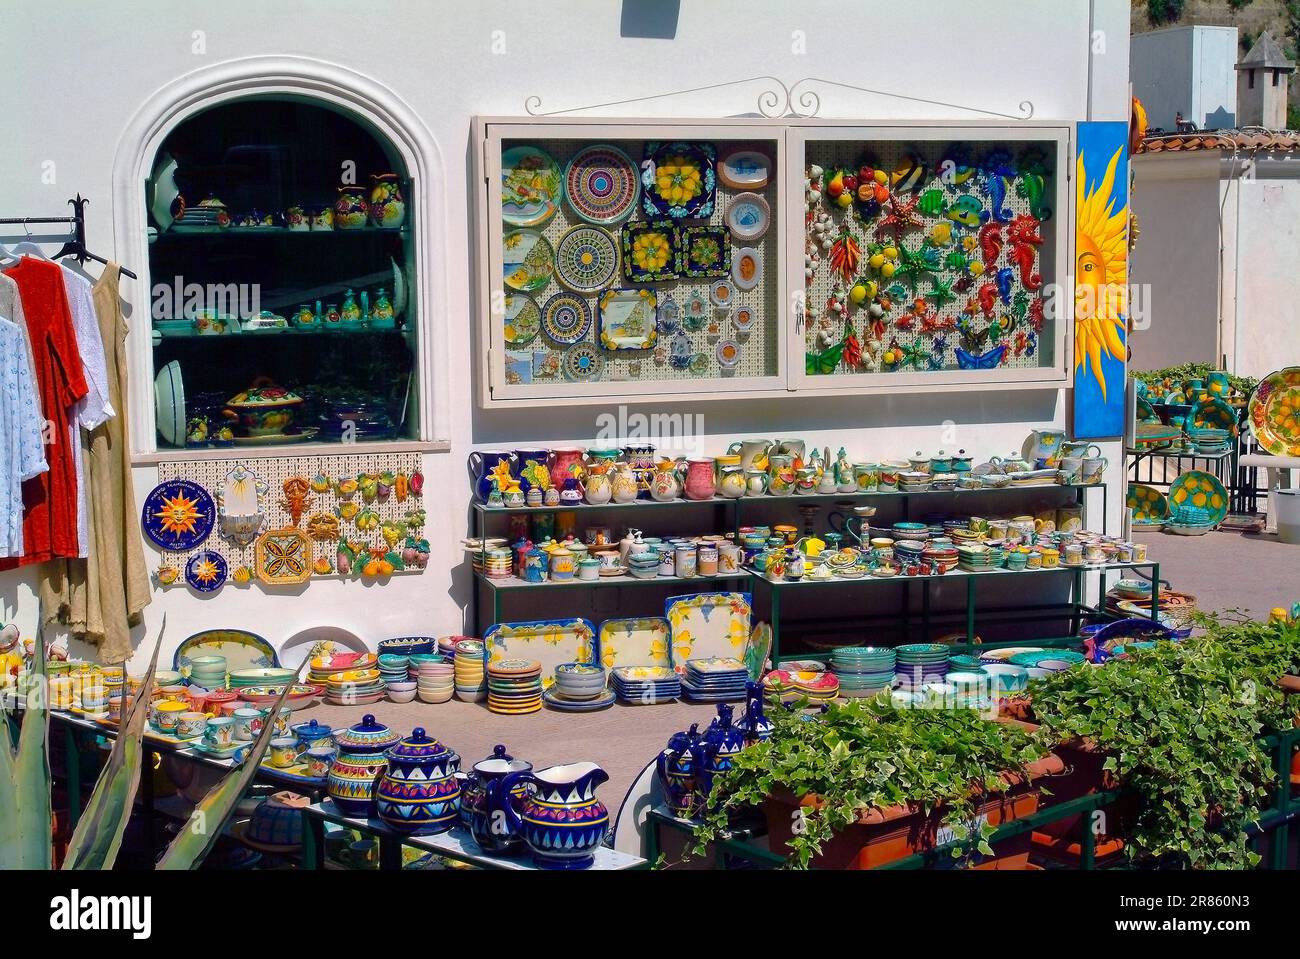 Italia Campania Costiera Amalfitana ( Costa de Amalfi ) - Positano Una tienda de cerámica característica Foto de stock